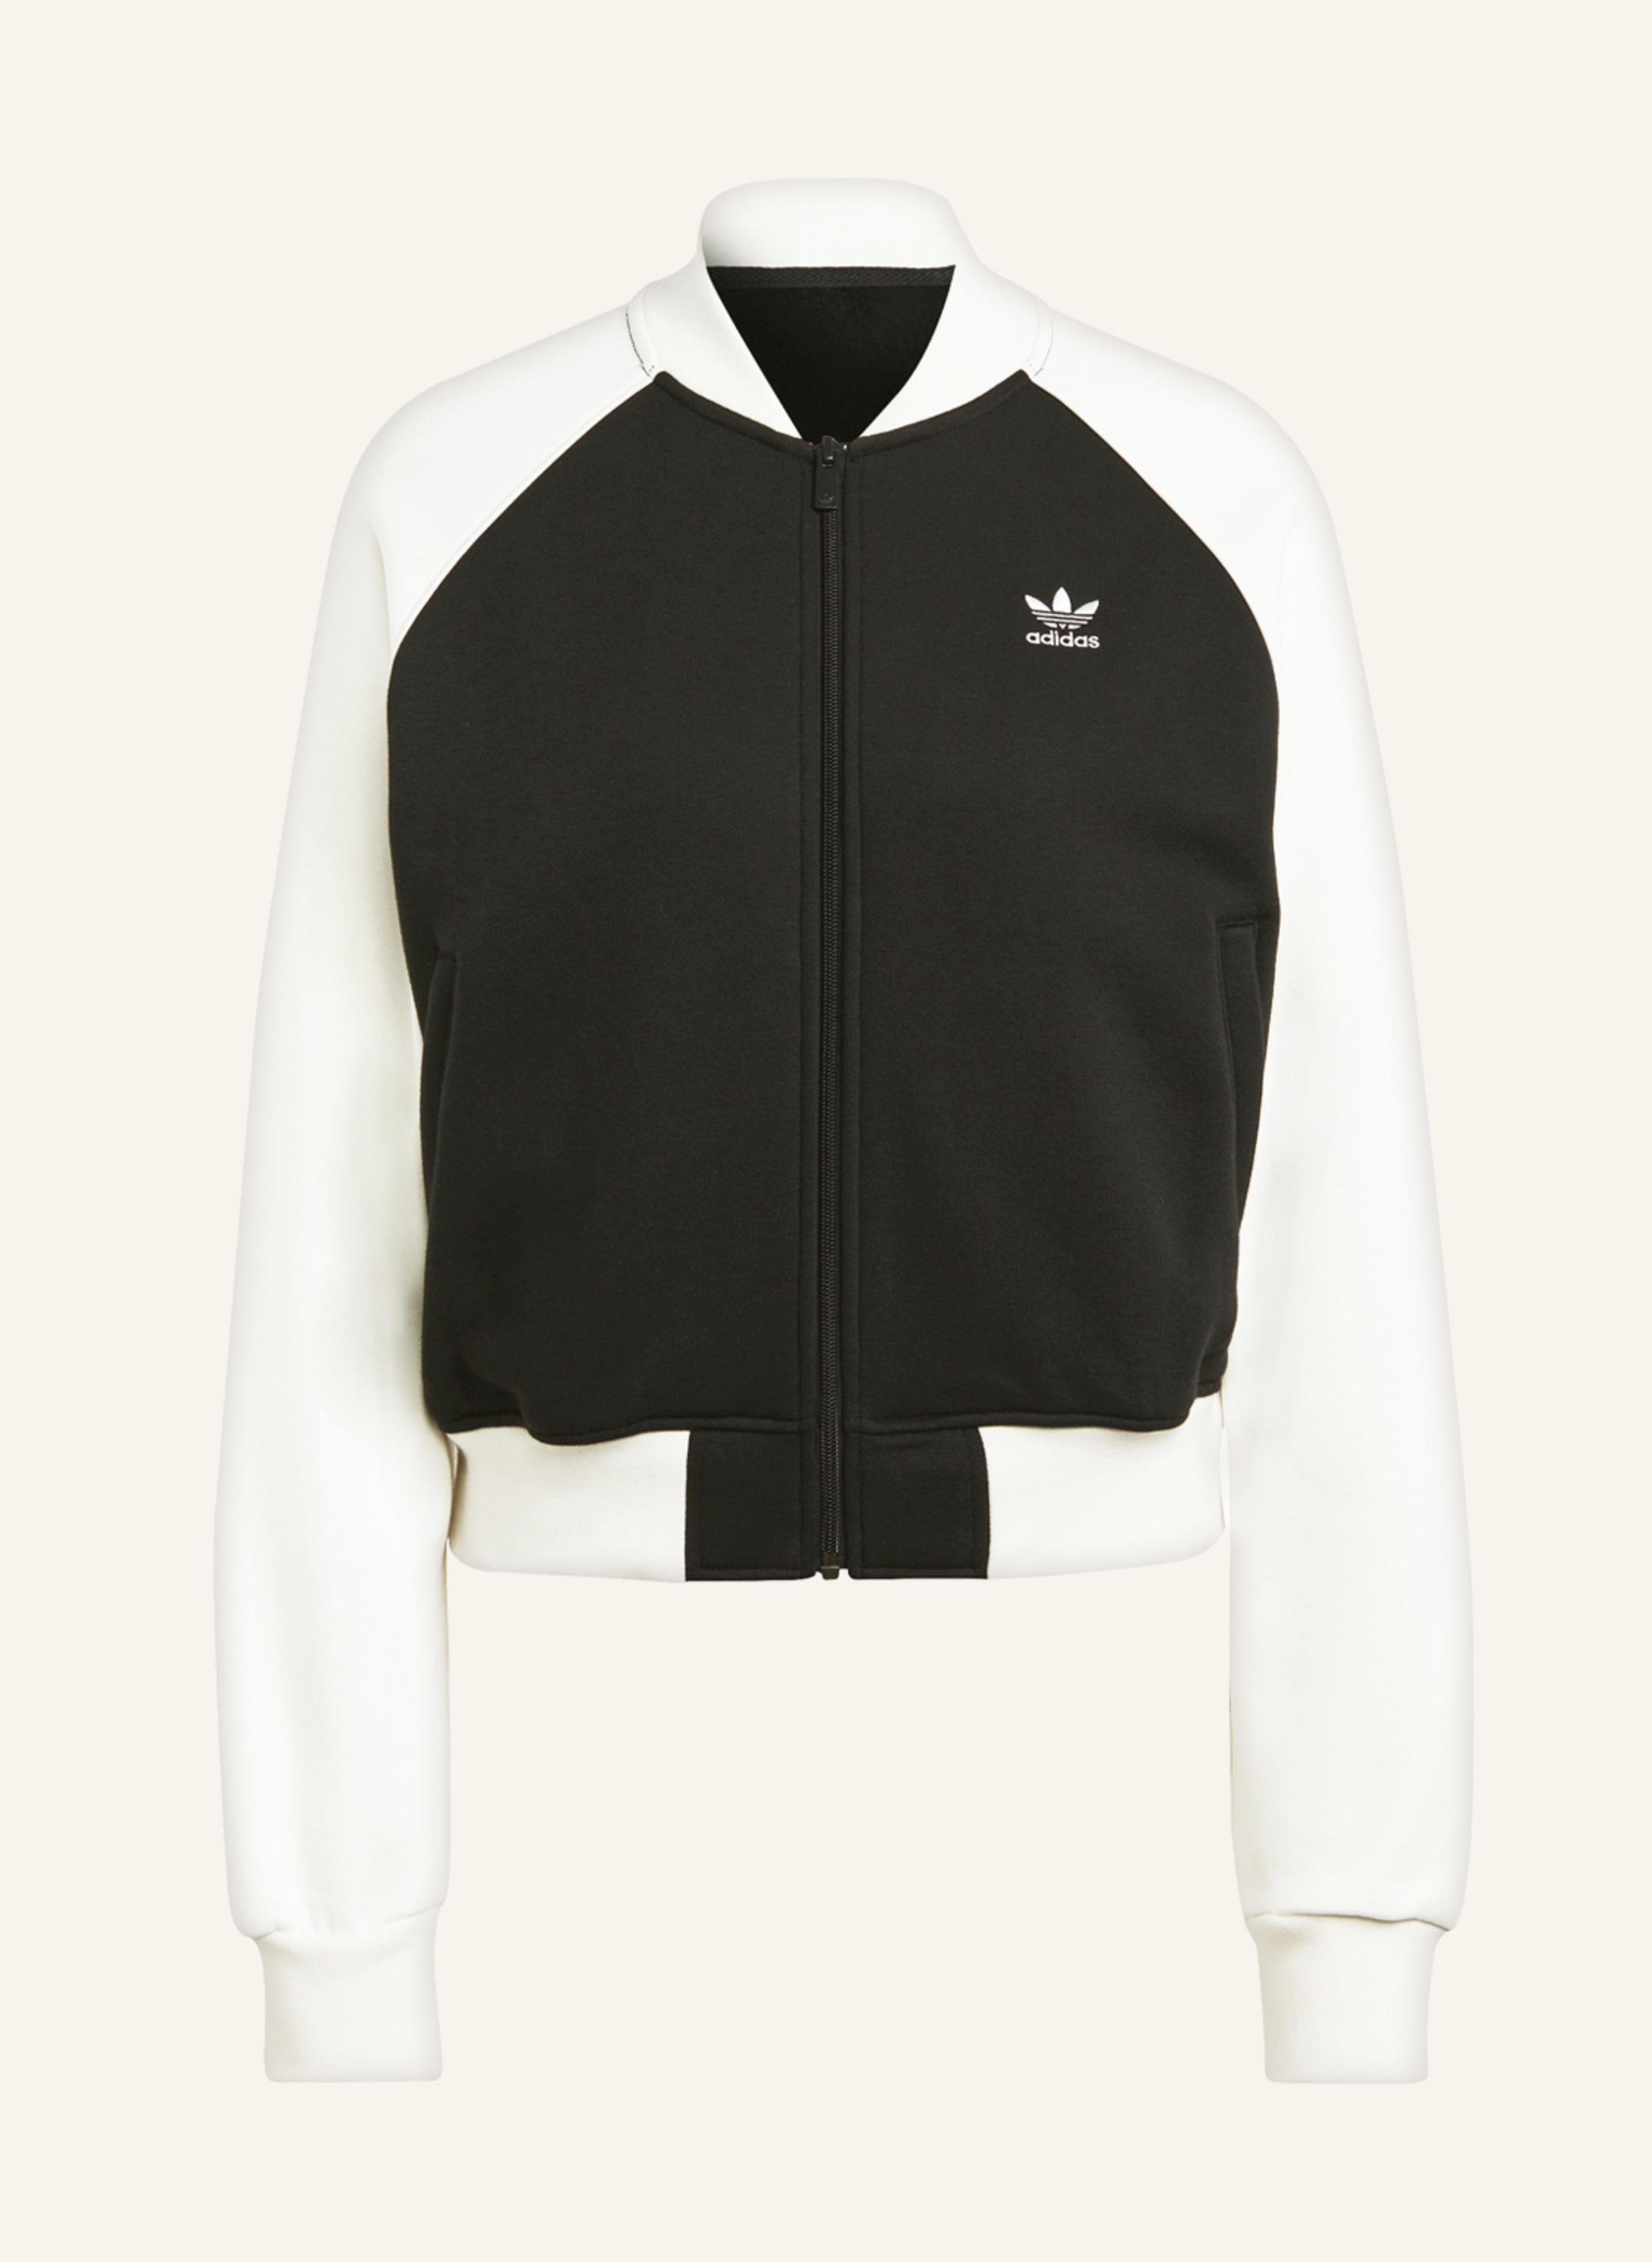 black/ CLASSICS TREFOIL jacket Originals ecru Sweat in ADICOLOR adidas